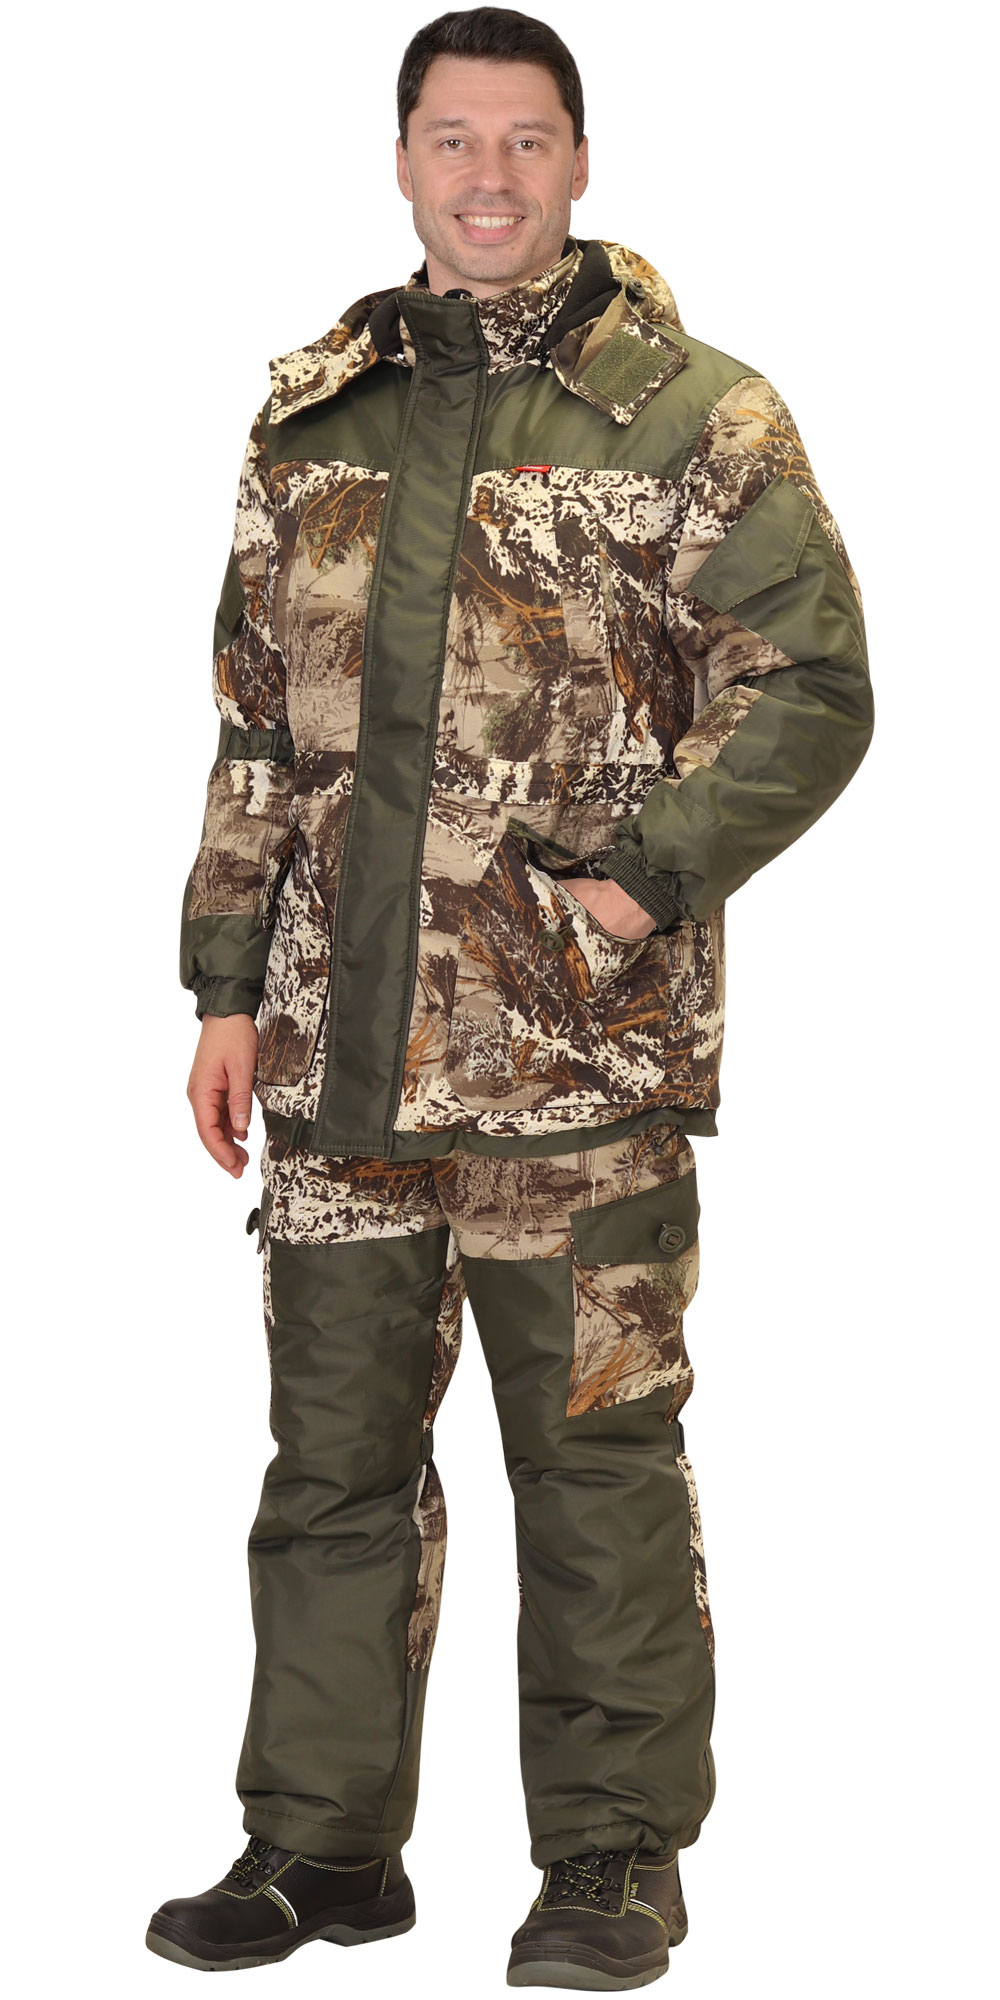 Зимний костюм "СИРИУС-ГОРКА" мужской, утепленный (куртка и брюки), цвет: КМФ Серый мох, ткань: смесовая